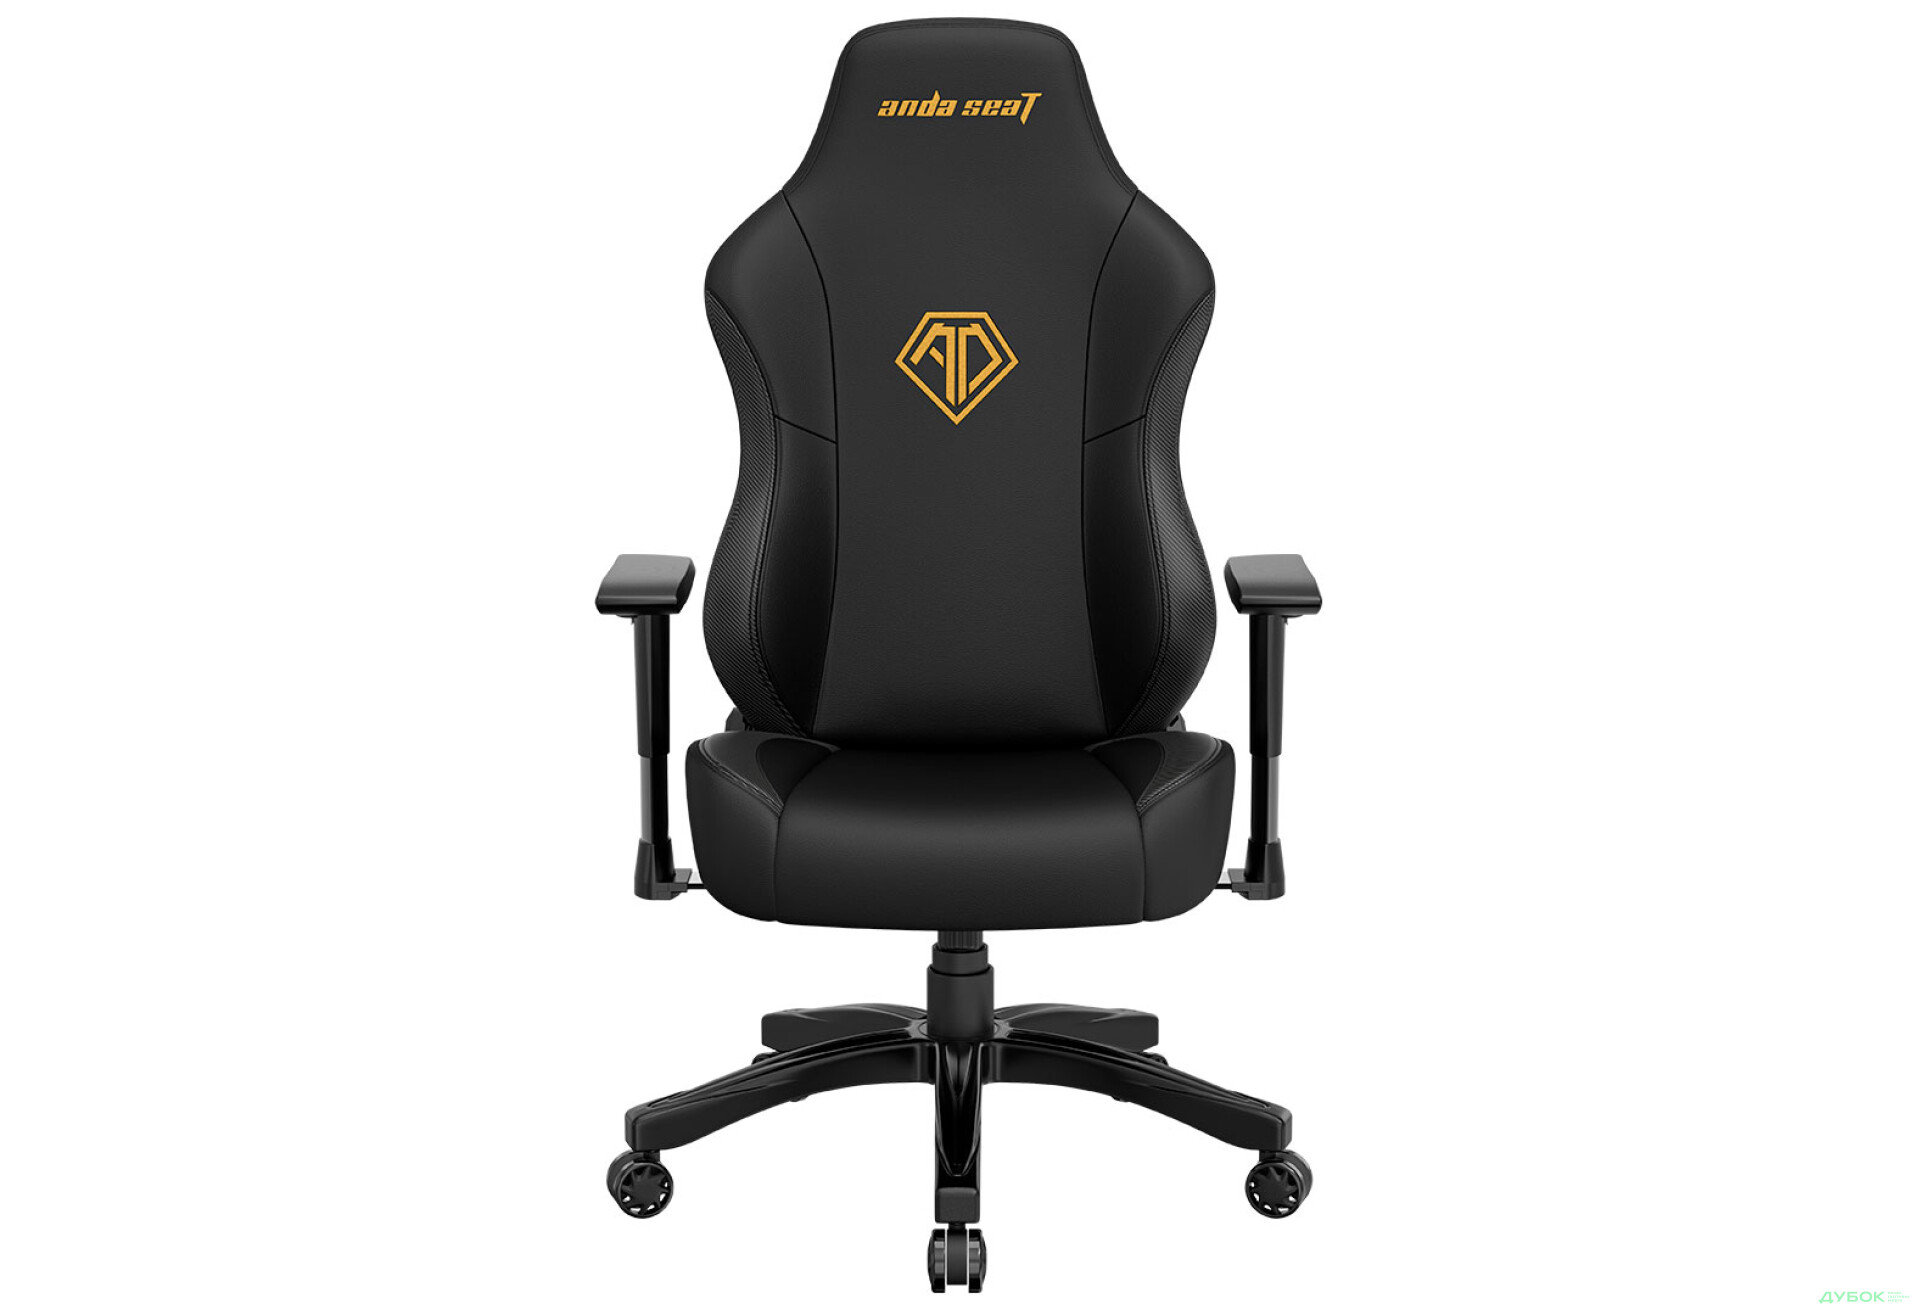 Фото 2 - Комп'ютерне крісло Anda Seat Phantom 3 70x55x134 см ігрове, чорне із золотом